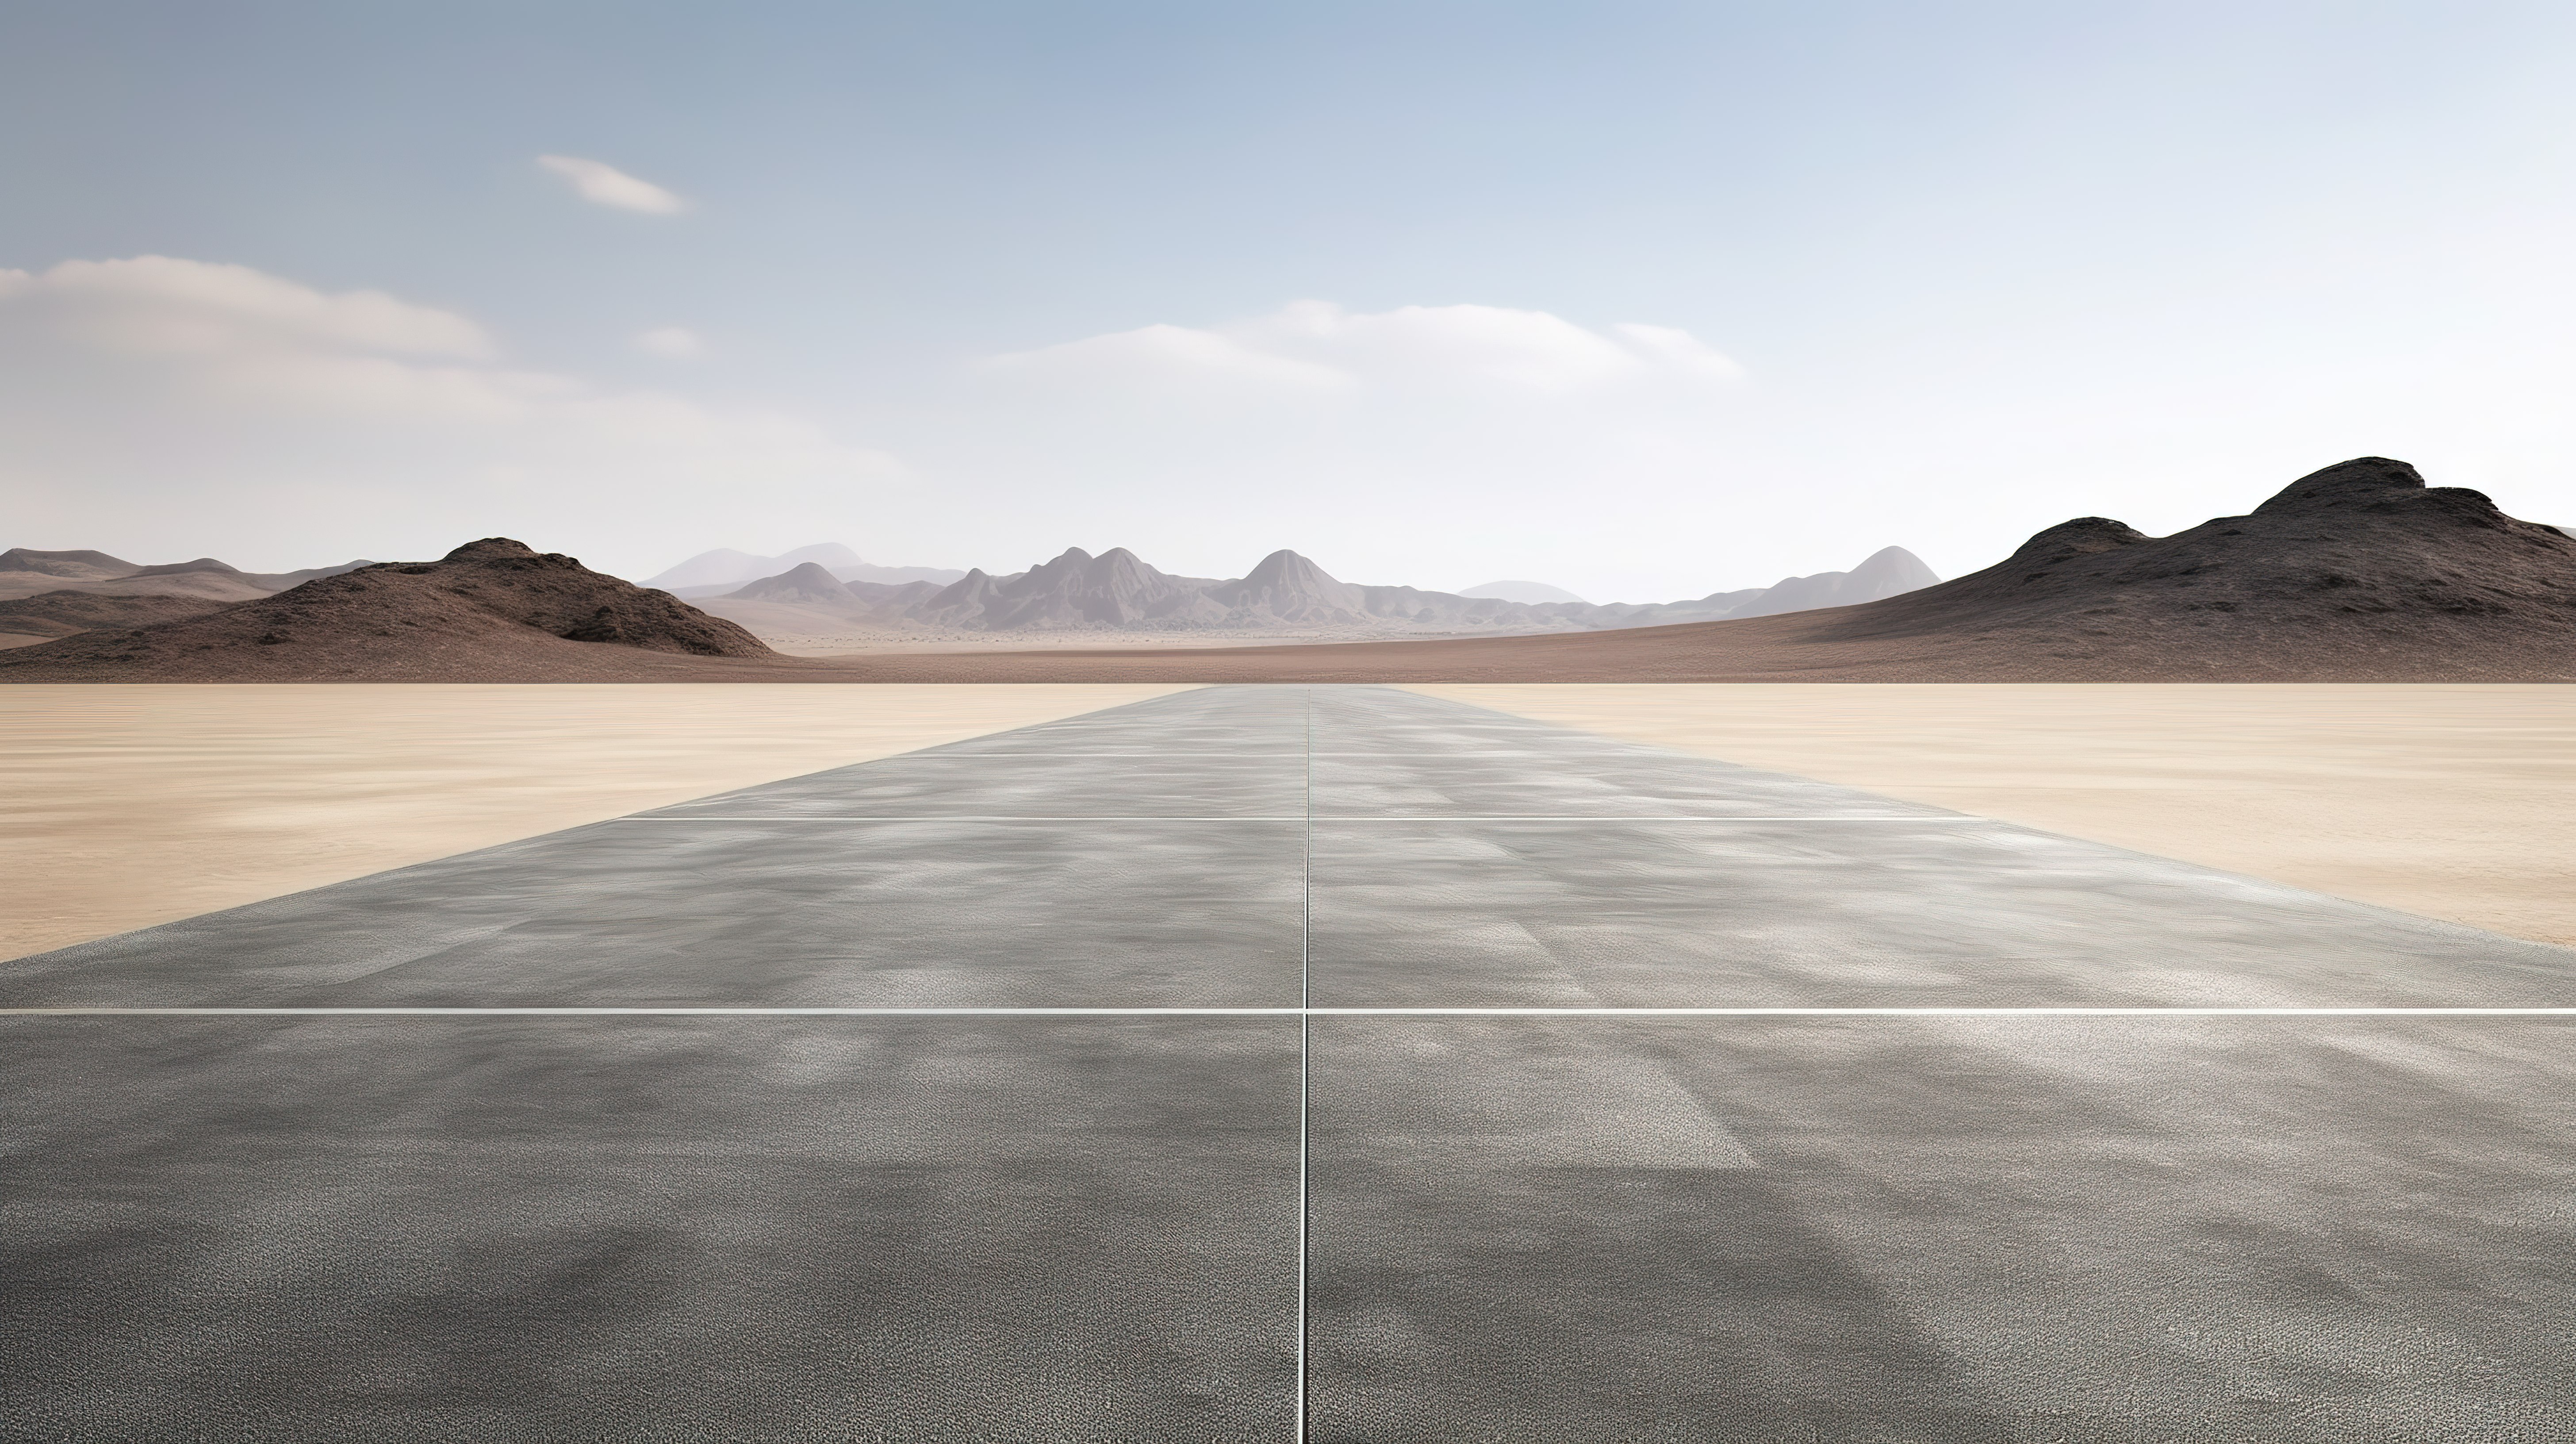 荒凉的停车场灰色沥青地面与贫瘠的沙漠背景 3d 渲染图片